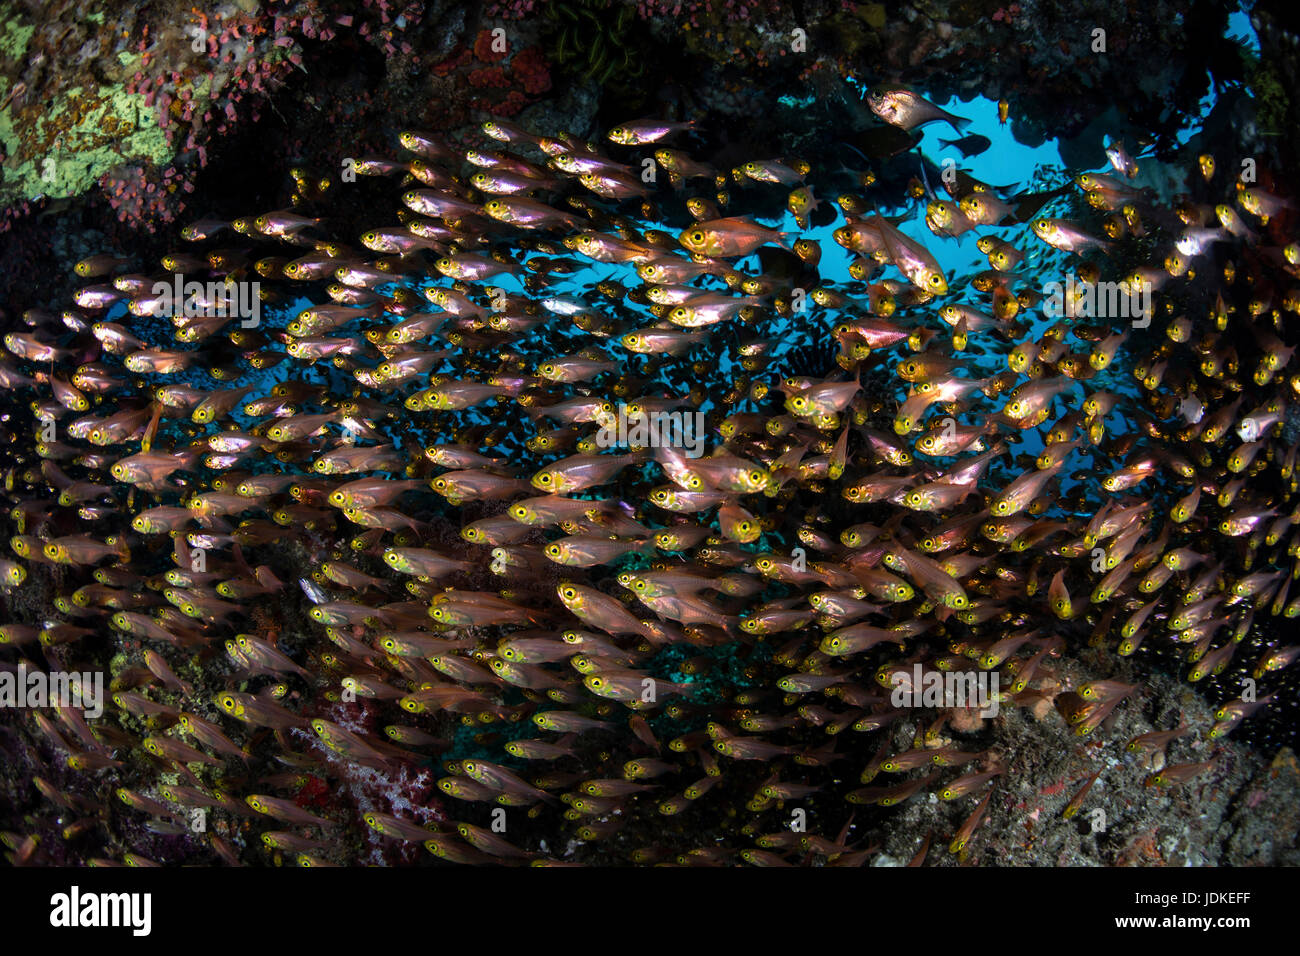 La balayeuse d'or autour de la scolarité, les coraux Parapriacanthus ransonneti, Raja Ampat, Papouasie occidentale, en Indonésie Banque D'Images